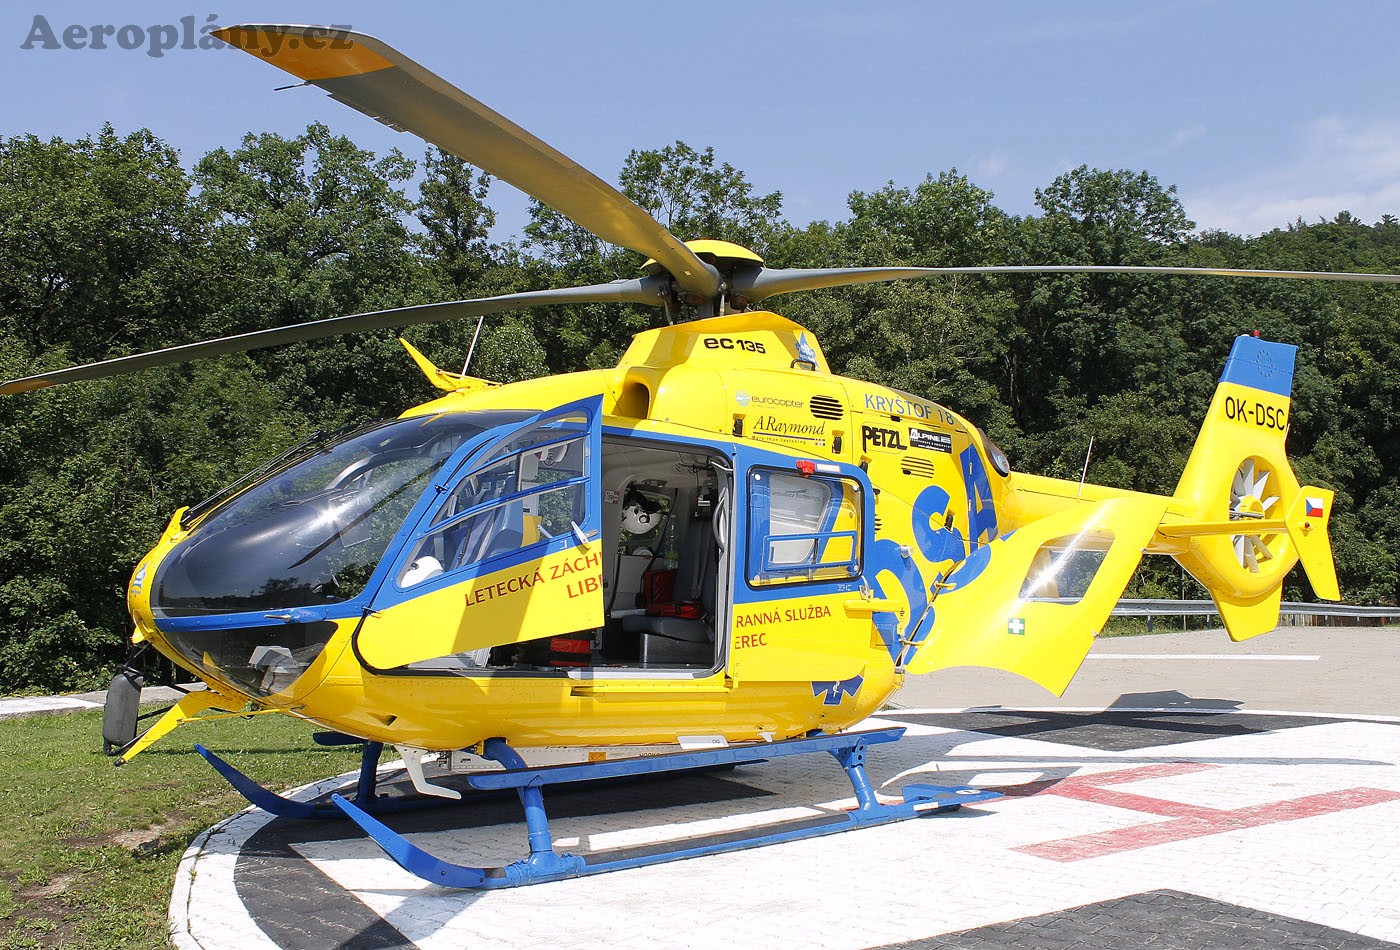 OK-DSC Eurocopter EC-135 T2